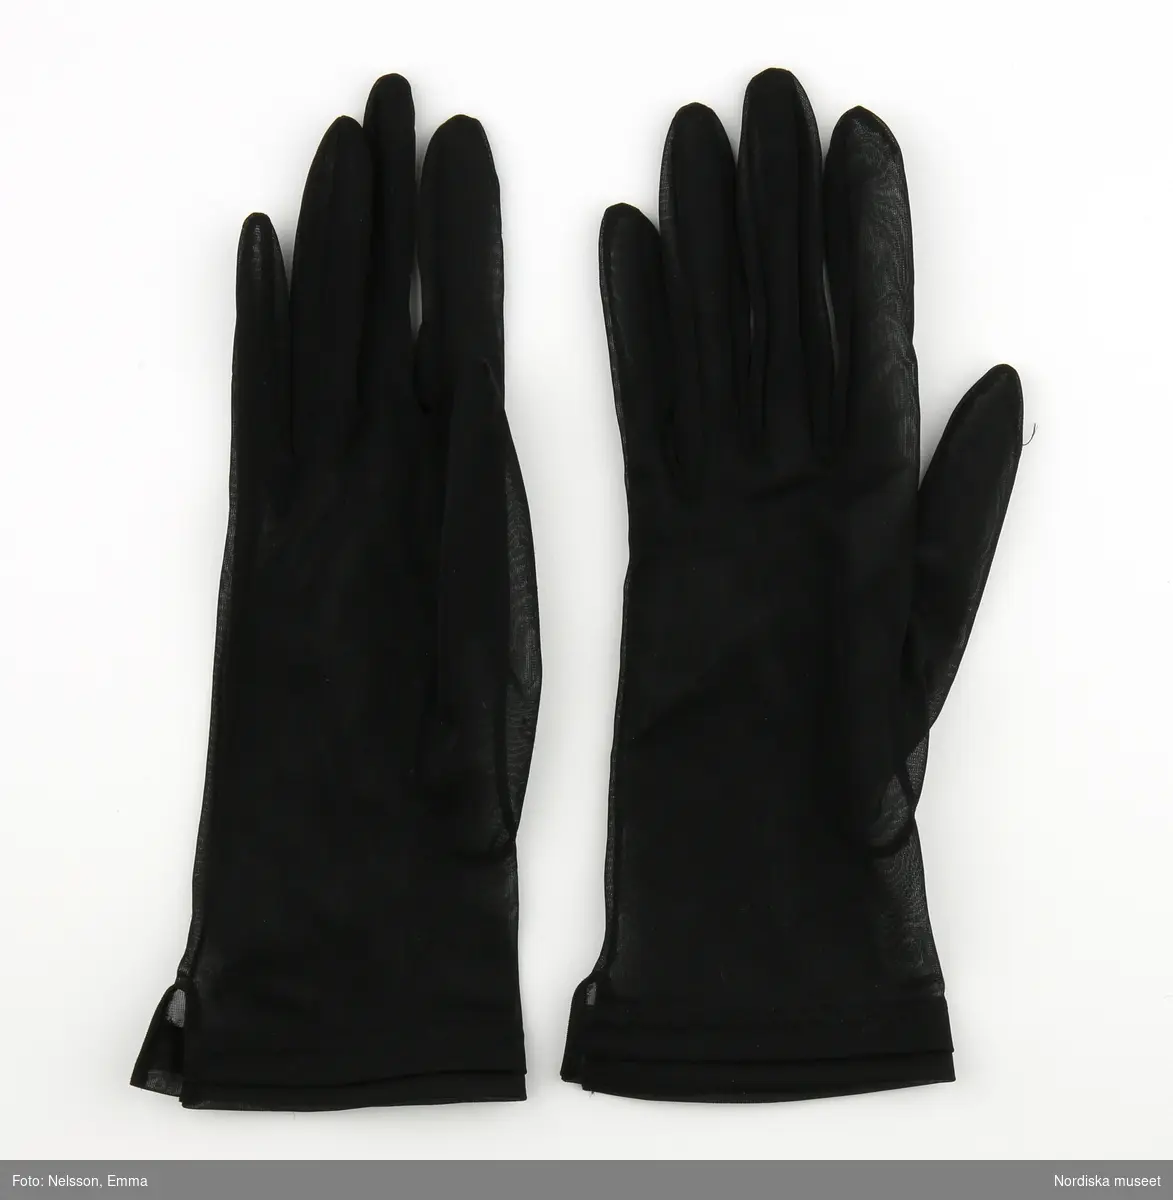 Tunna svarta handskar utan dekor förutom en extra liten kant i överkanten faststickad med tvillingnål i sicksackform.
/Magdalena Fick 2012-05-21